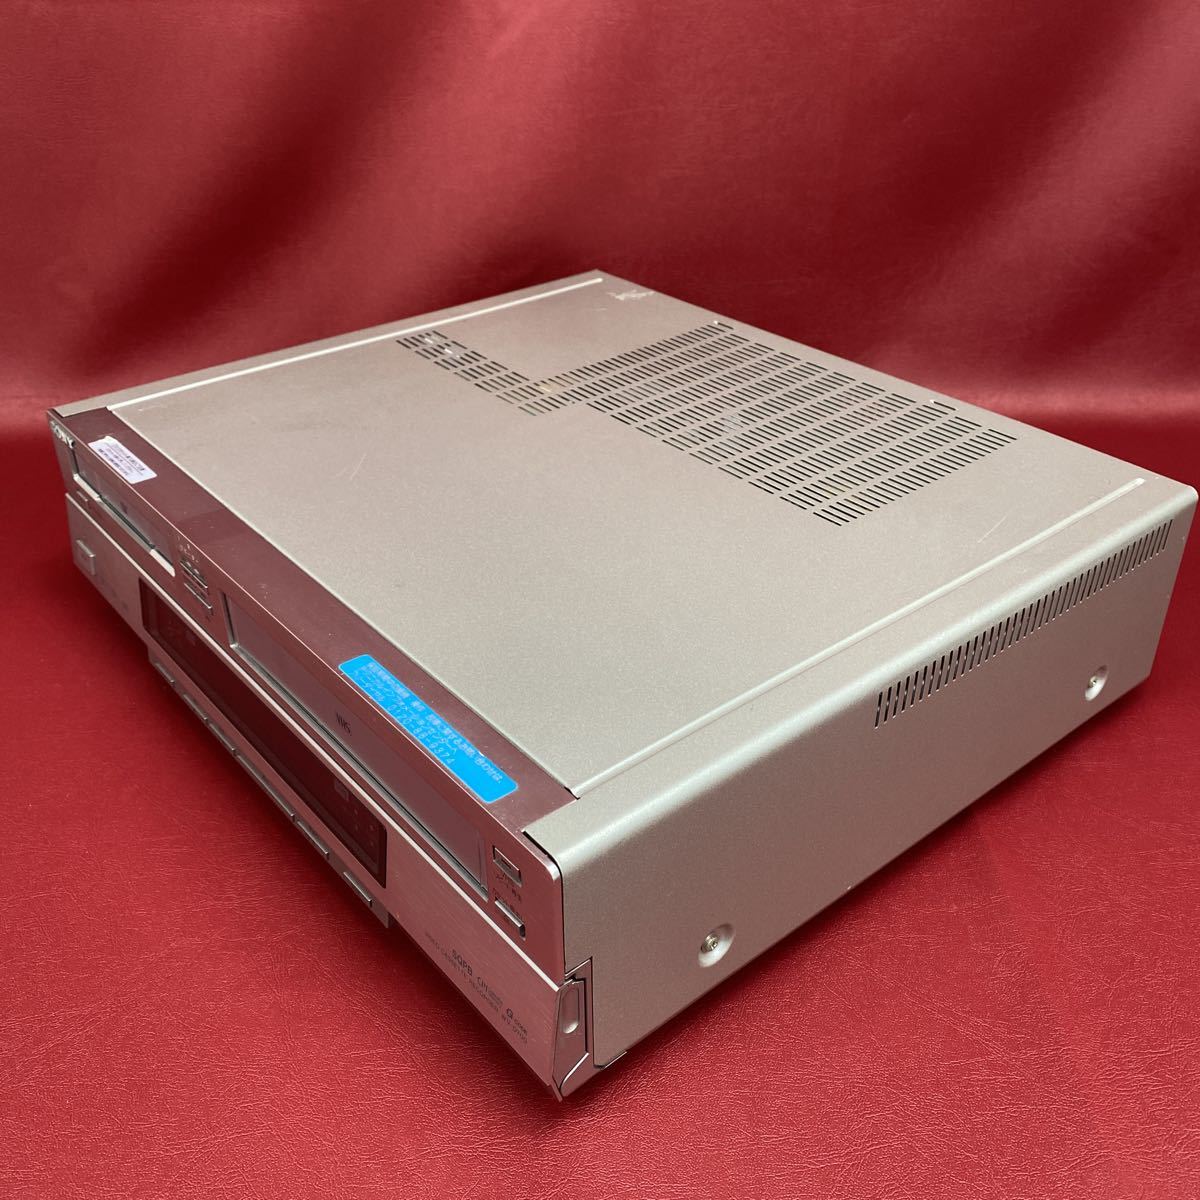 ジャンク SONY ソニー WV-D700 DV/VHS ビデオデッキ 純正リモコン付属